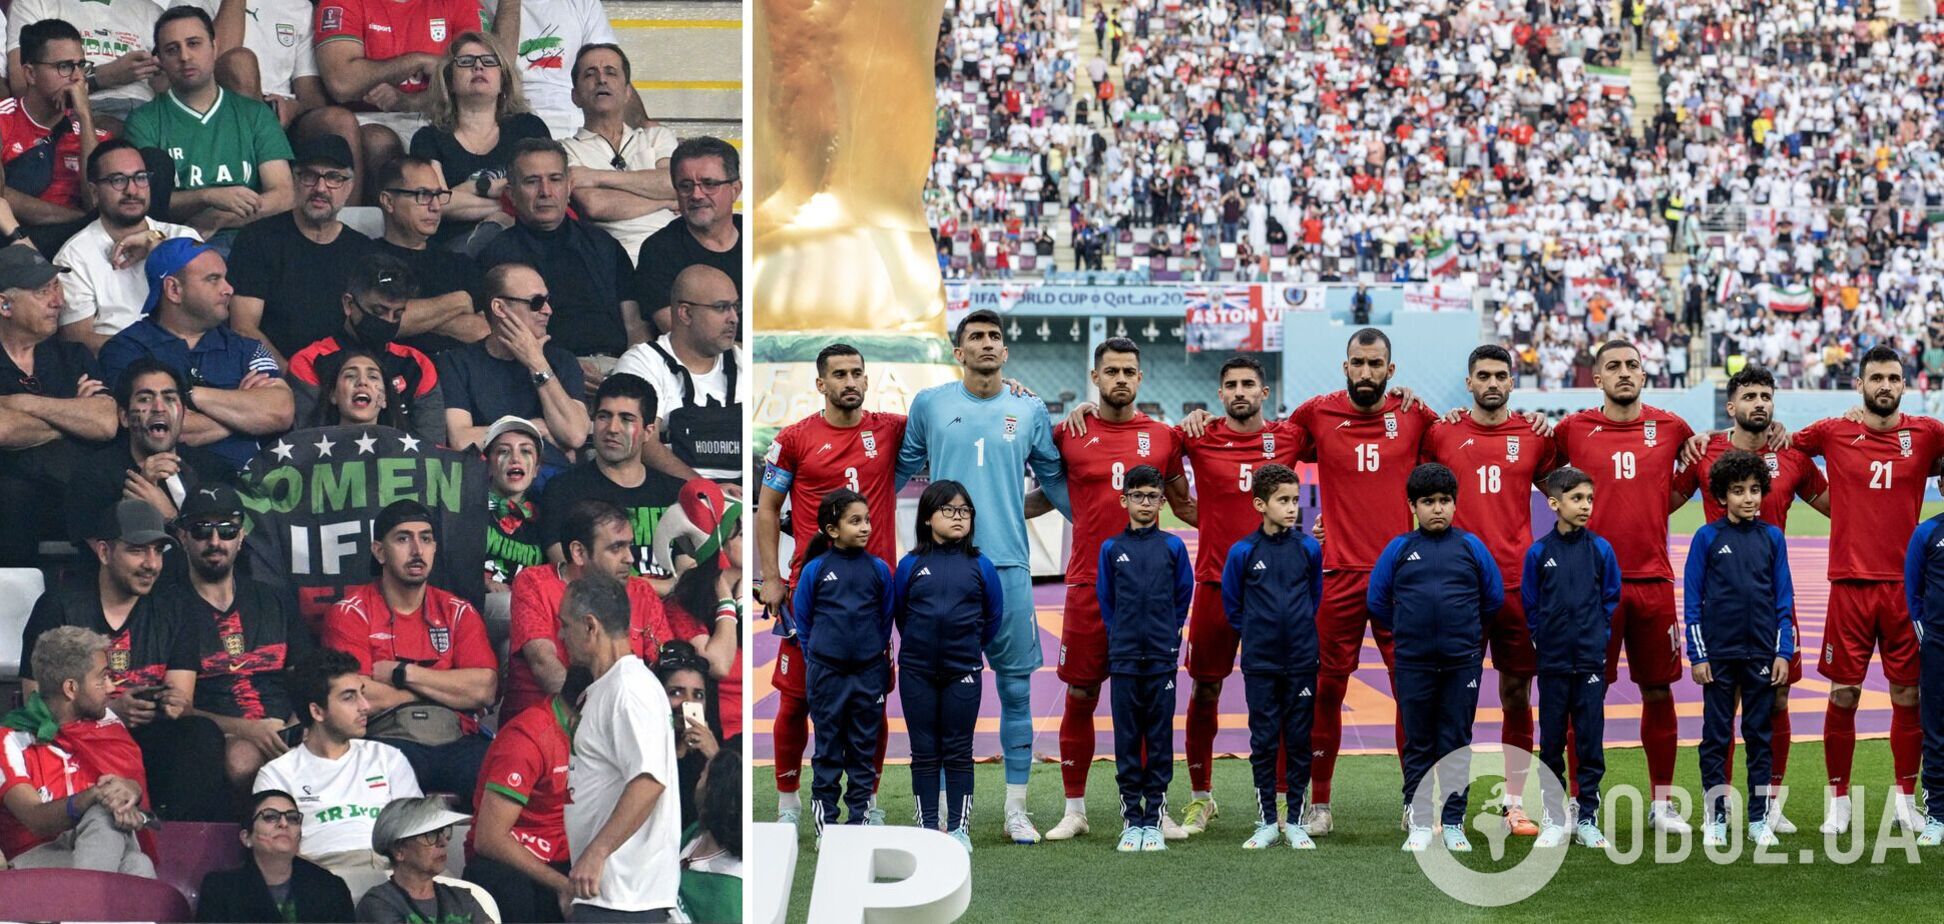 Союзника России освистали на ЧМ по футболу, а игроки сборной Ирана отказались петь гимн в знак протеста